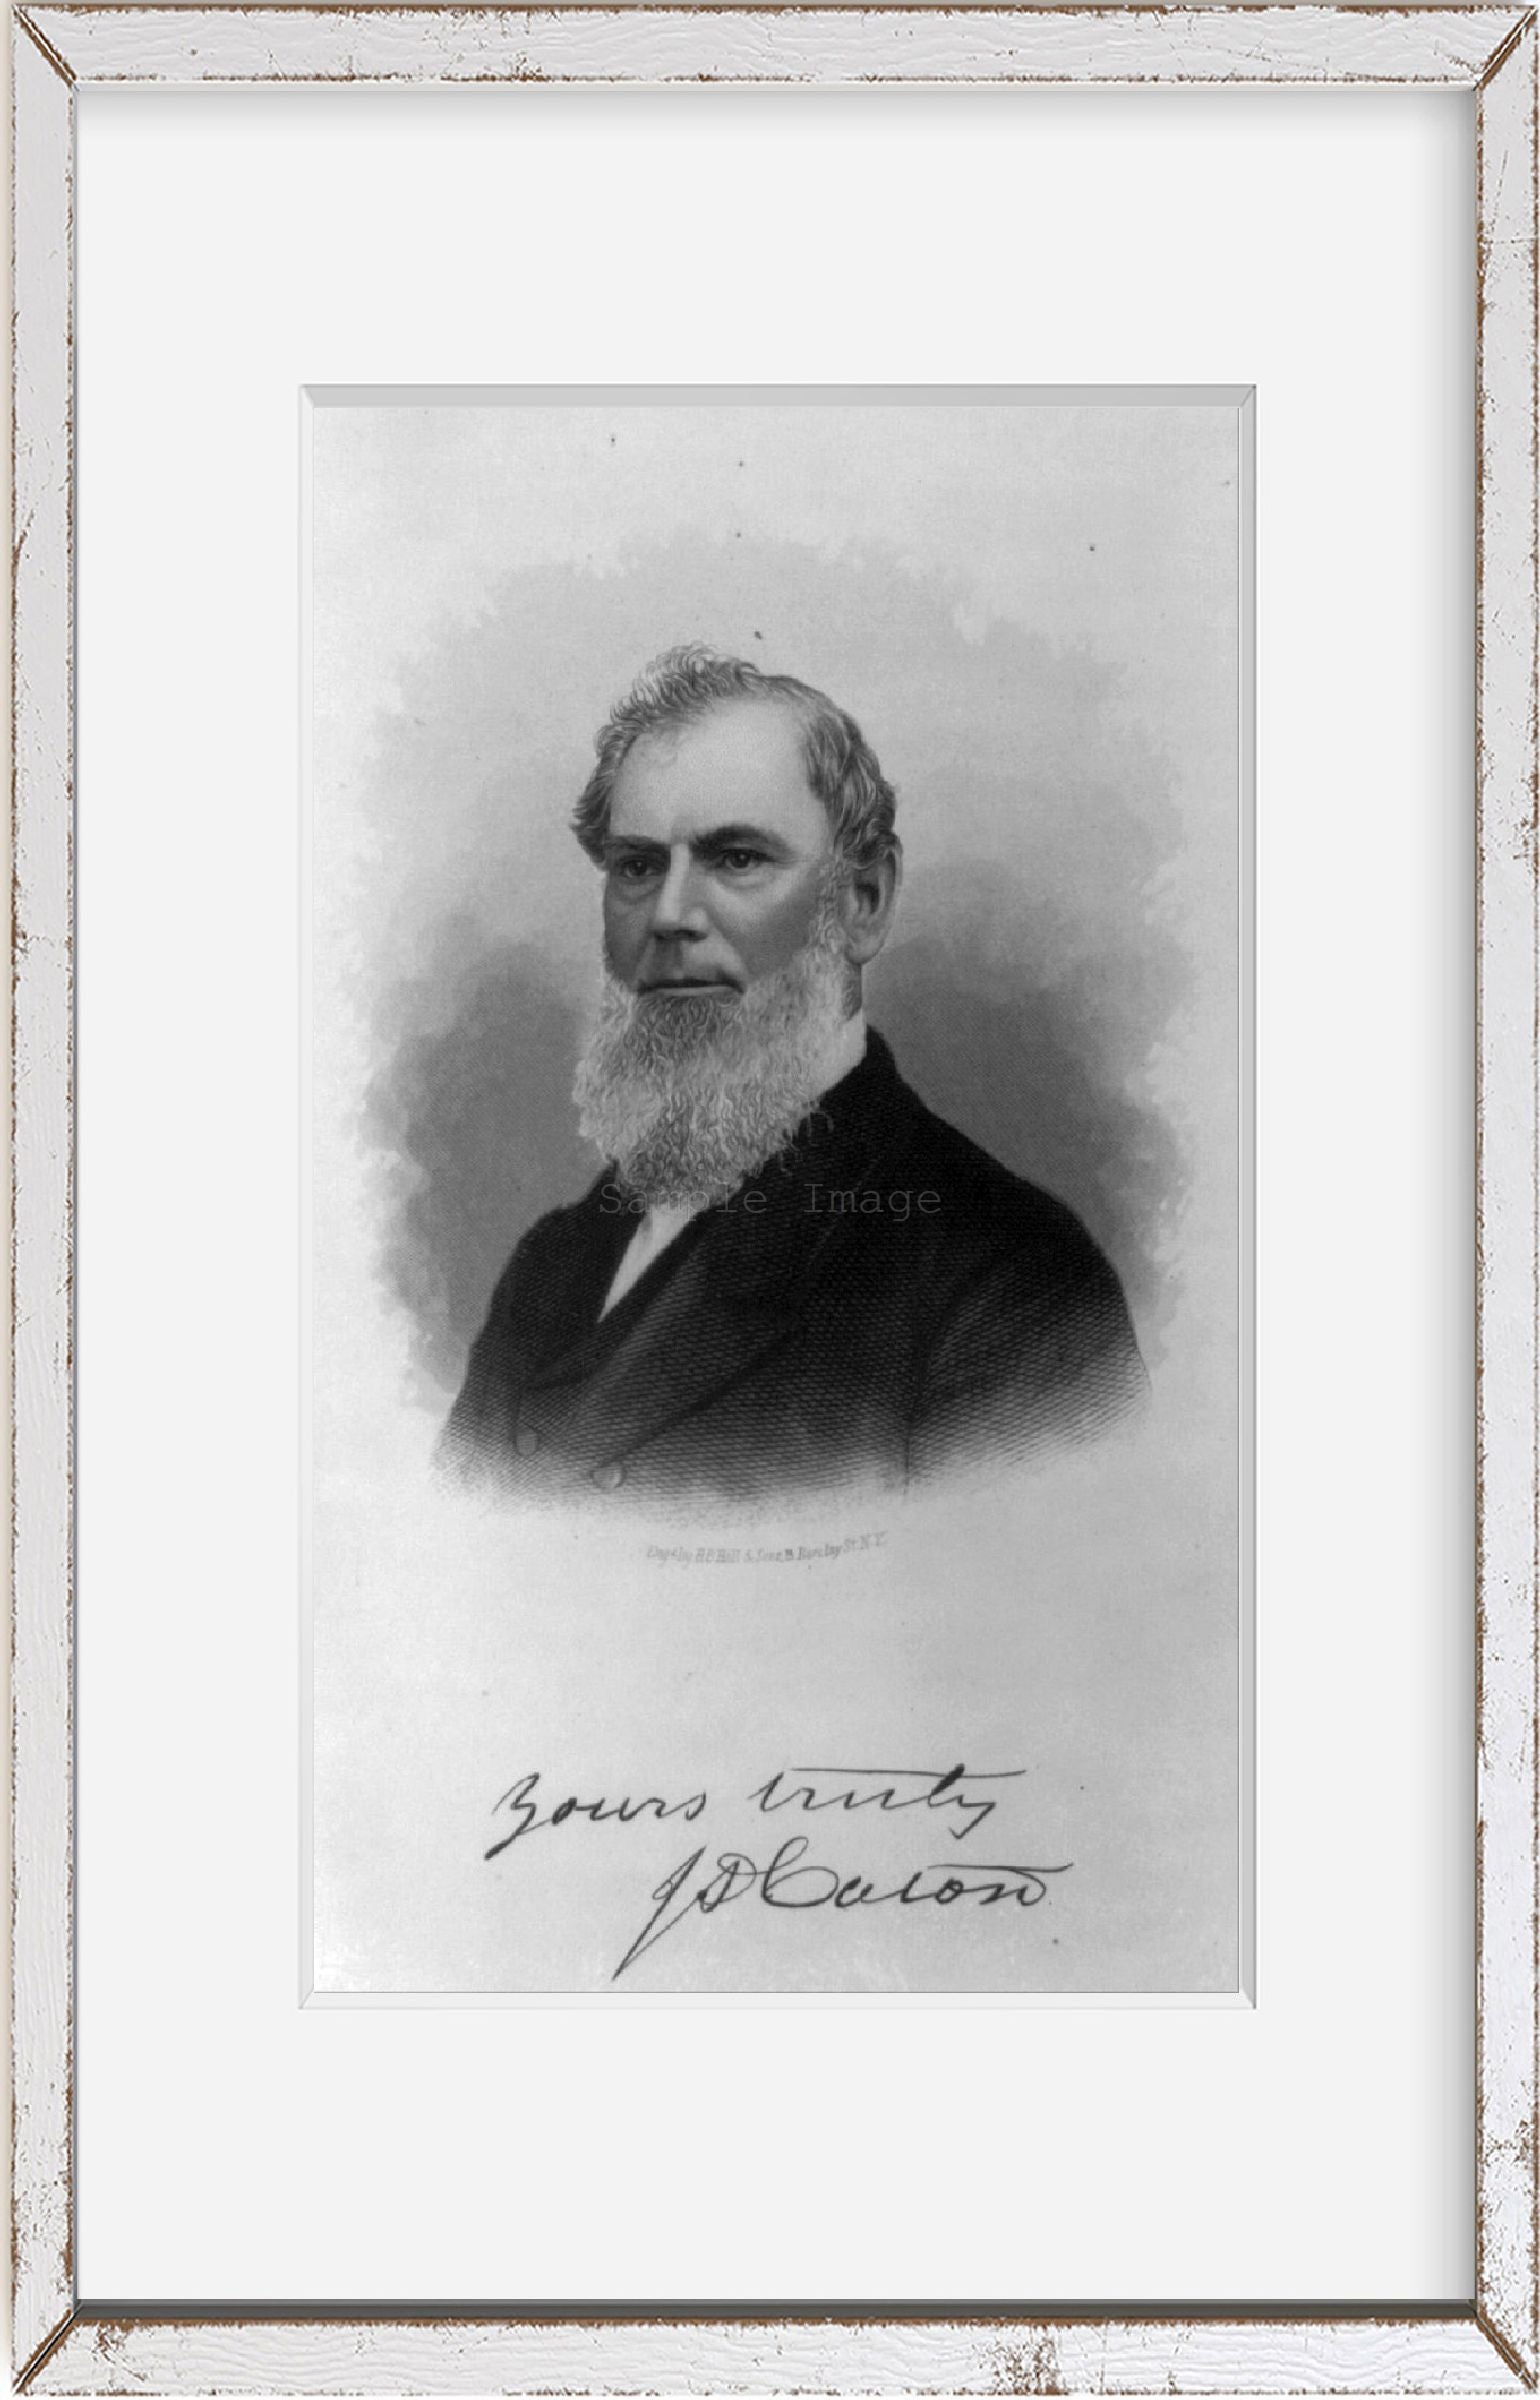 1879 photograph of John D. Coton